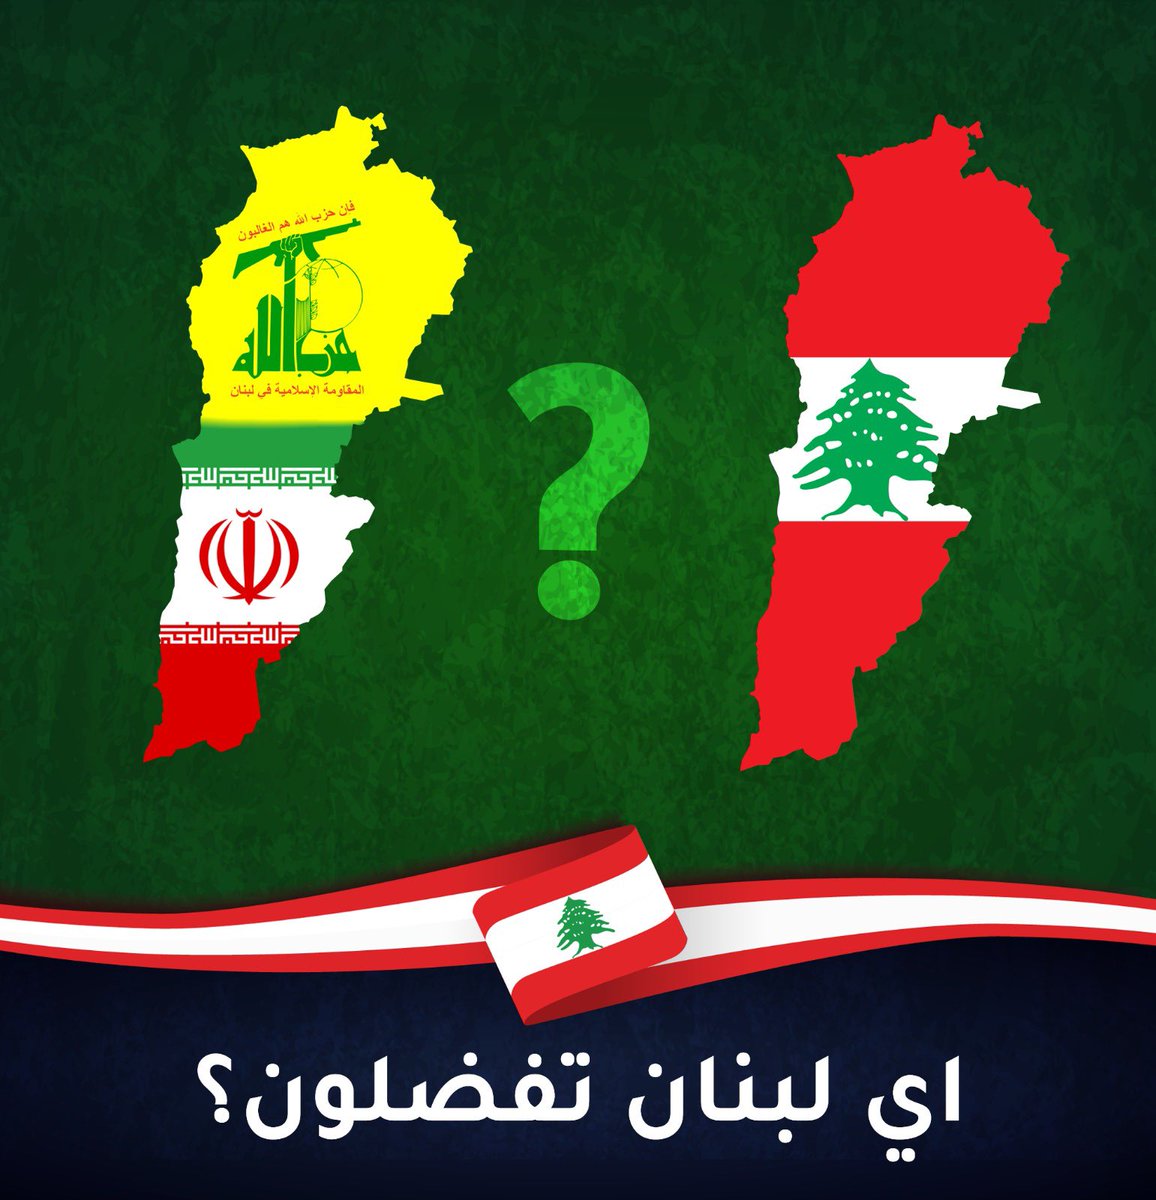 أيها اللبنانيون: أي لبنان  تفضلون؟  ...